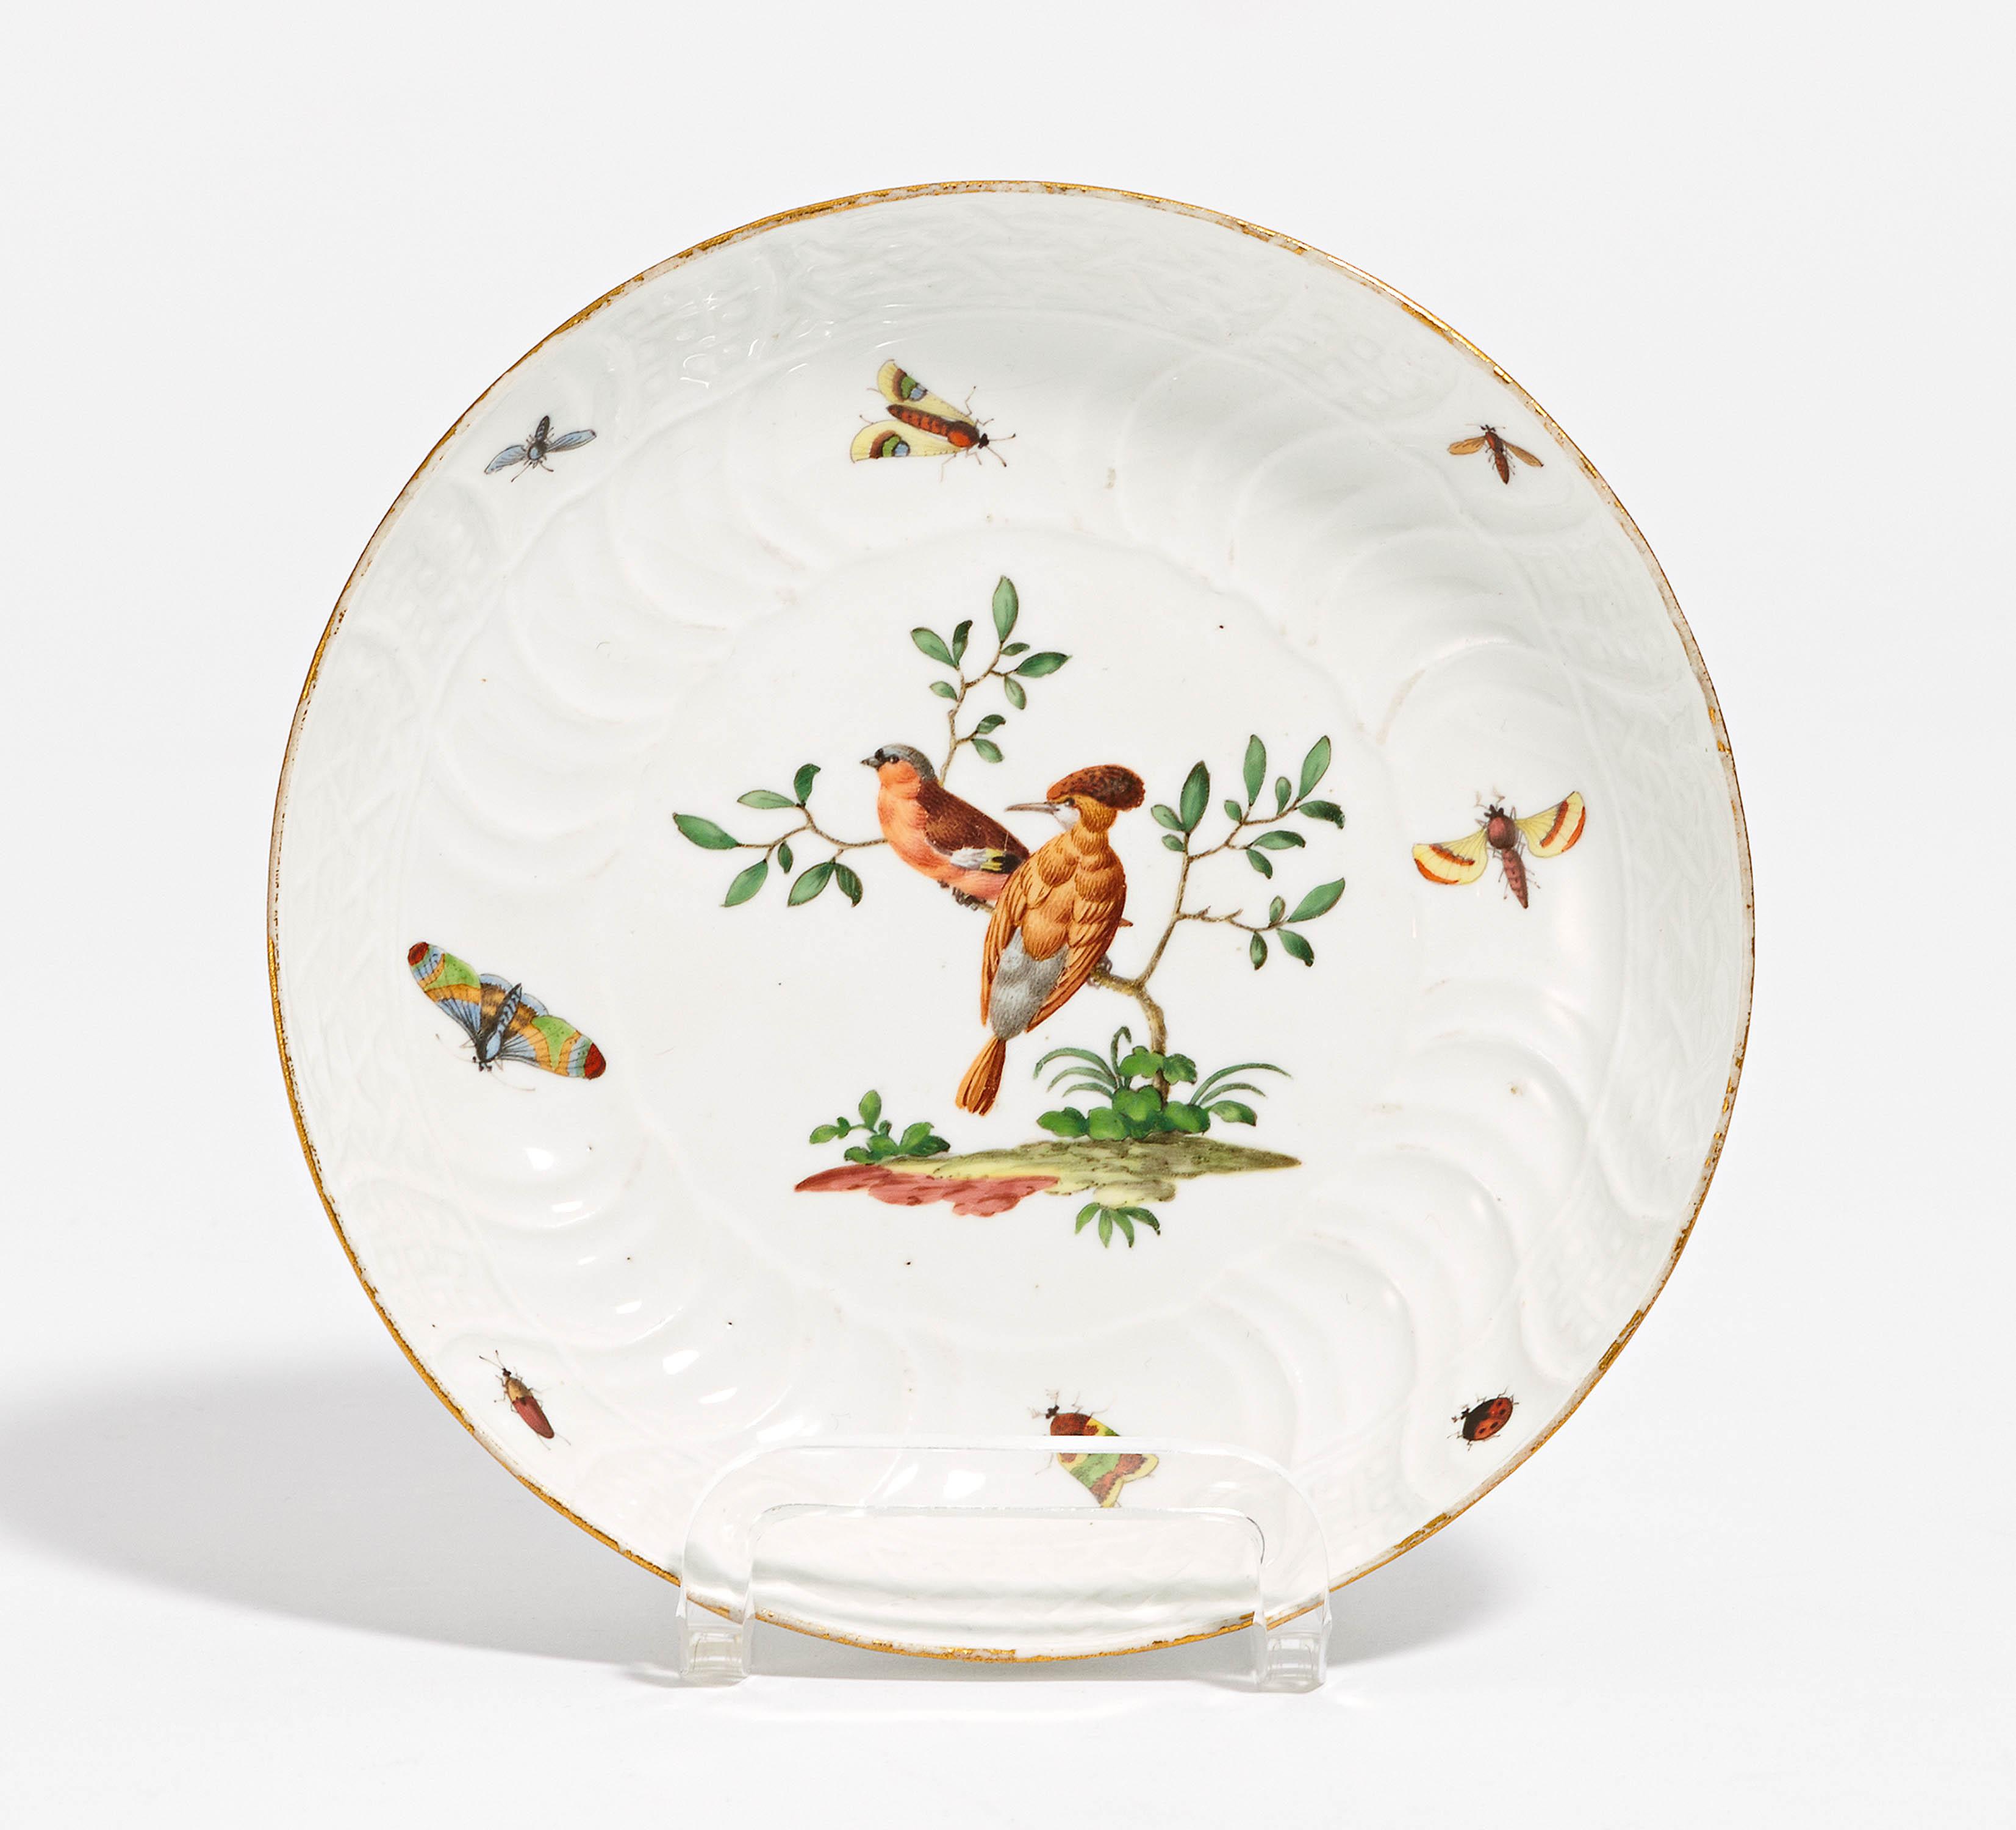 Plate with bird décor